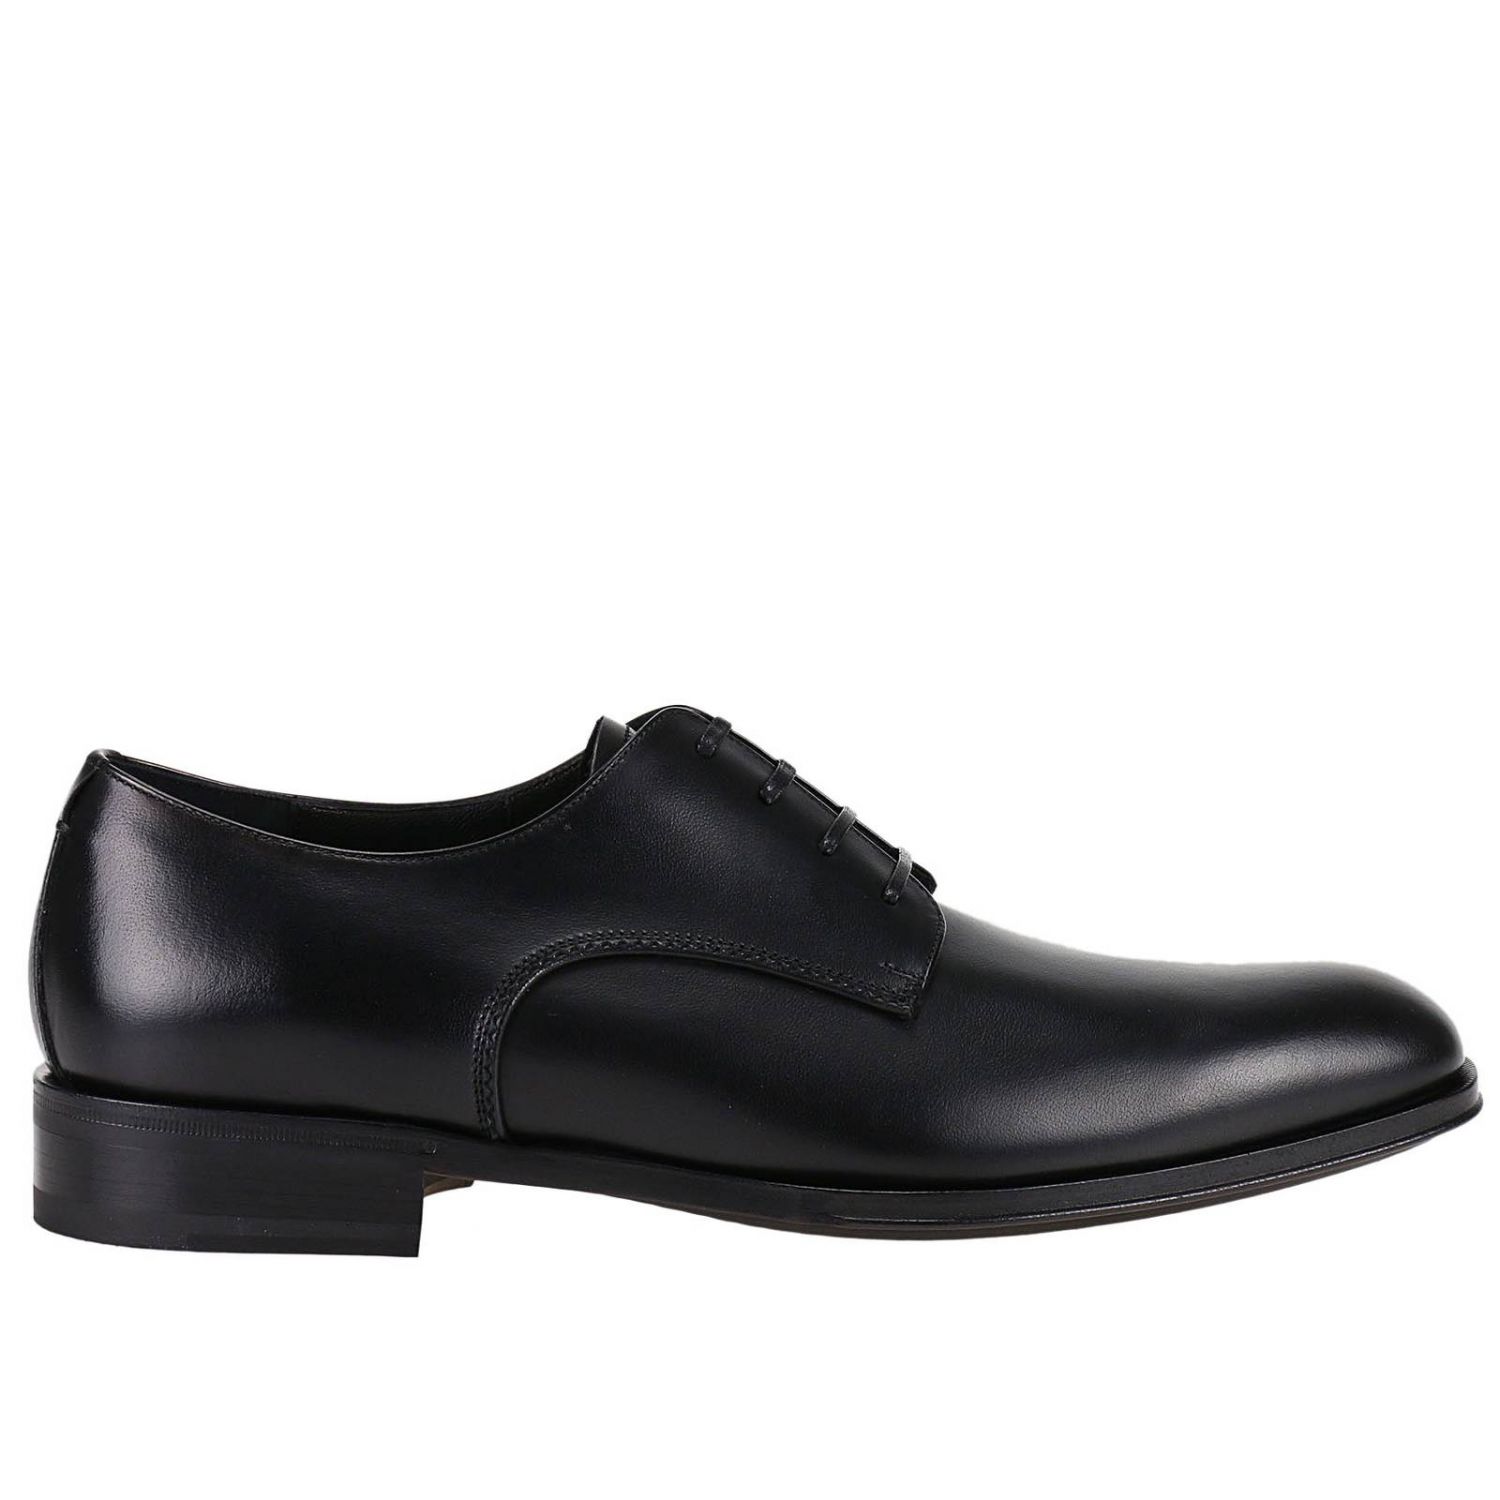 Salvatore Ferragamo Outlet: Shoes men - Black | Brogue Shoes Salvatore ...